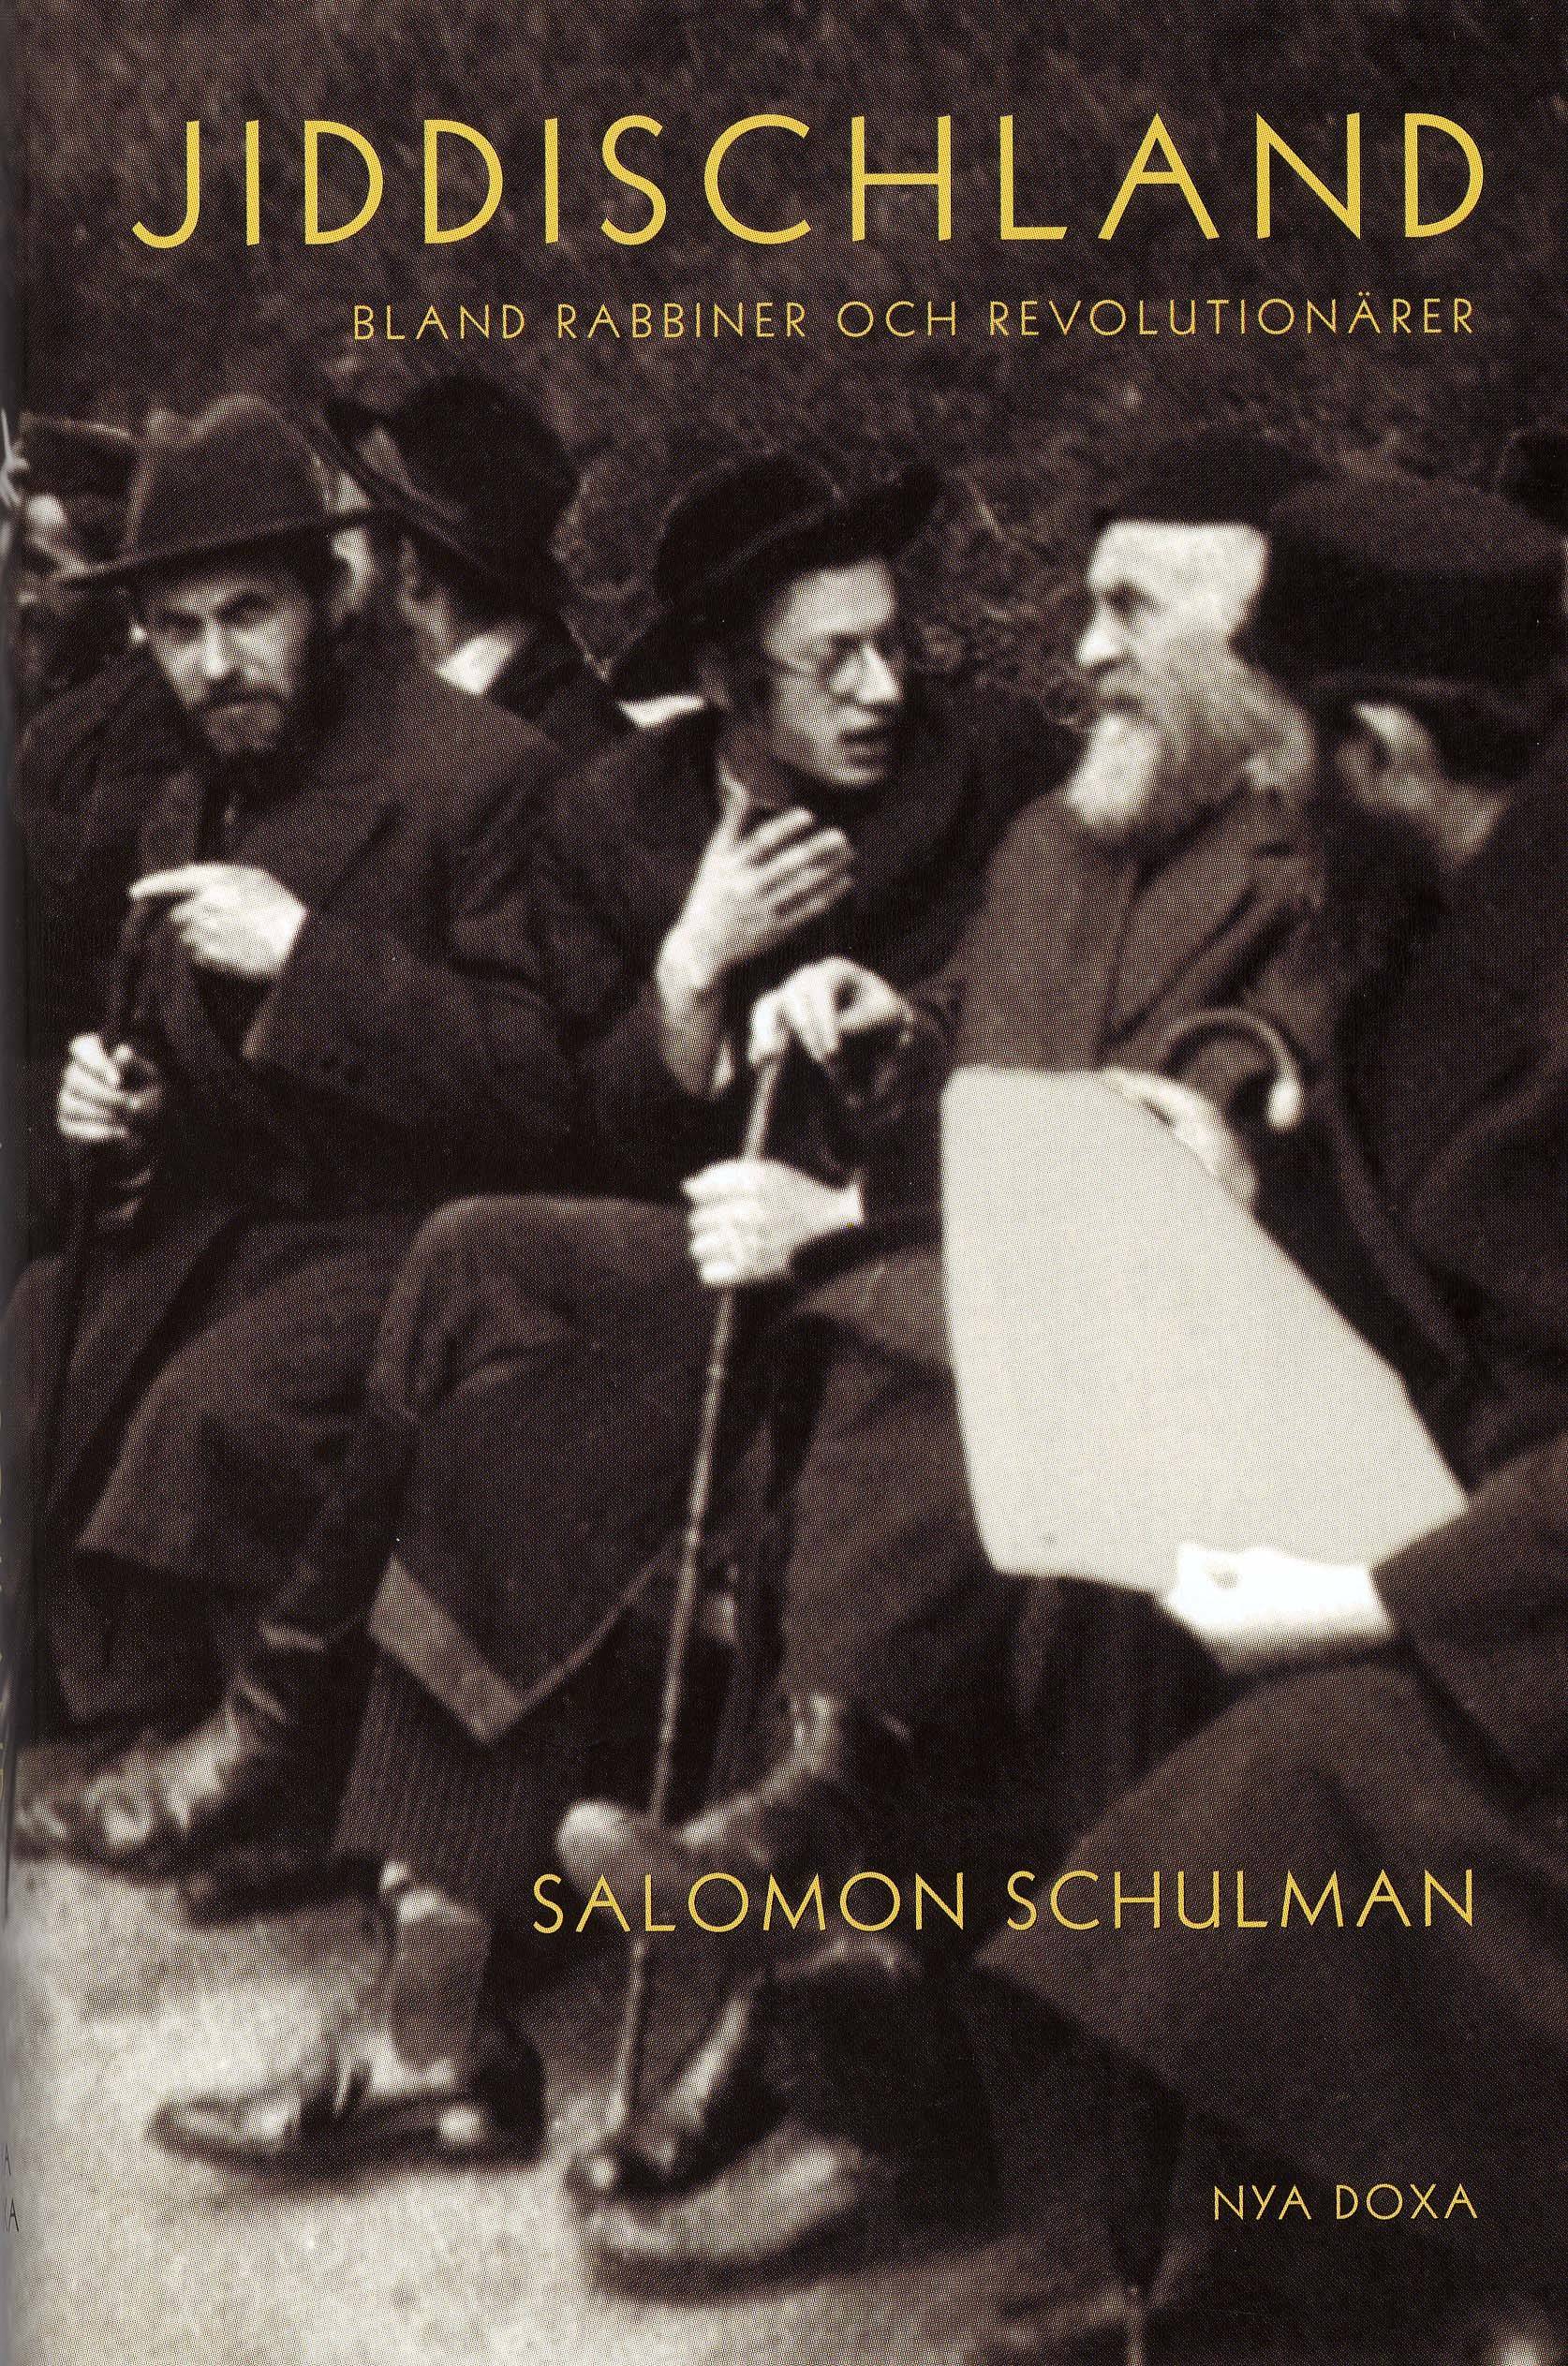 Jiddischland - Bland rabbiner och revolutionärer